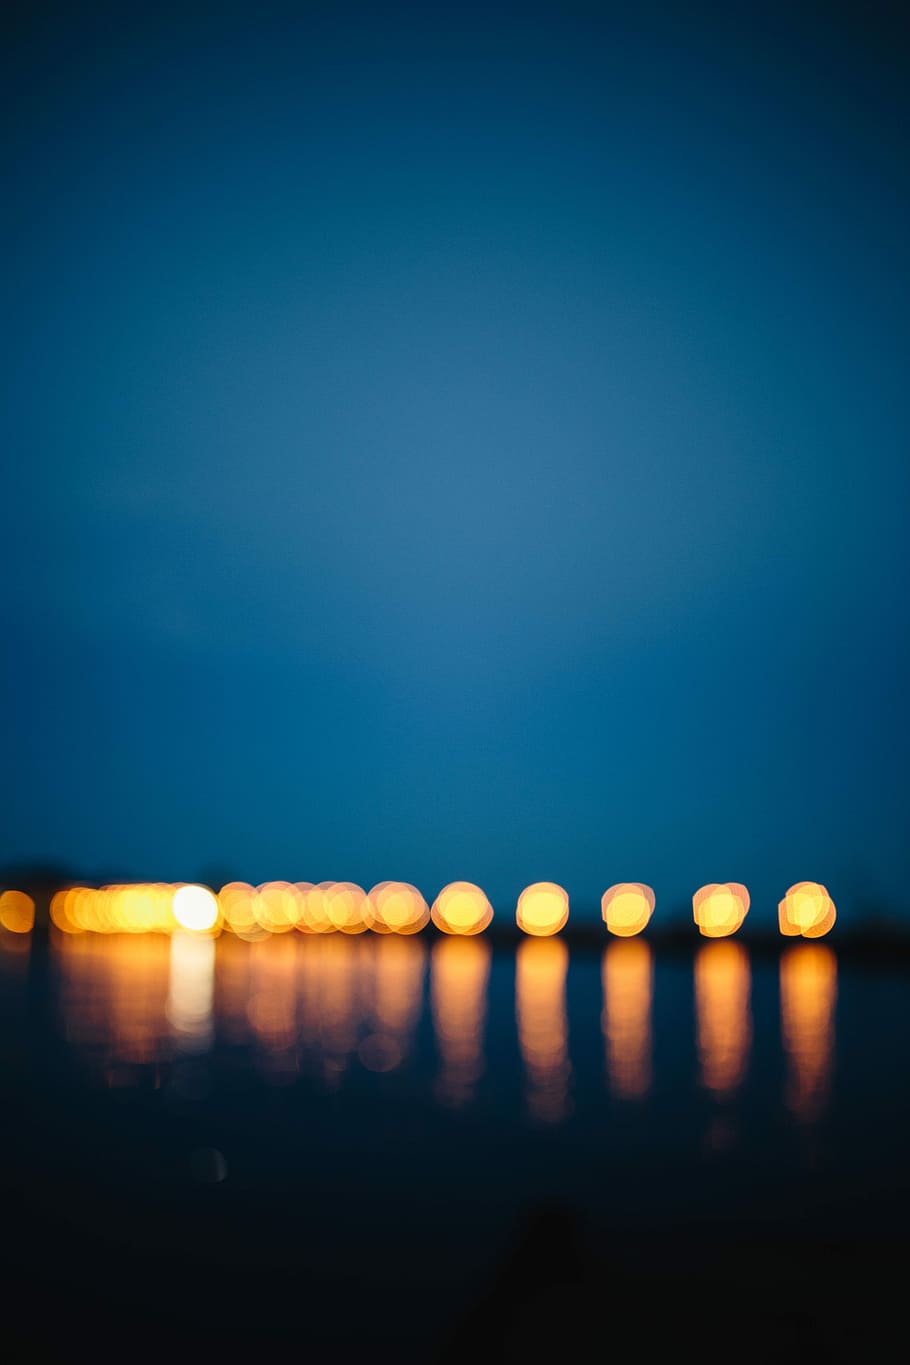 reflejado, agua, noche, luces de la ciudad, en la noche, costa, océano, mar, ciudad, reflexión